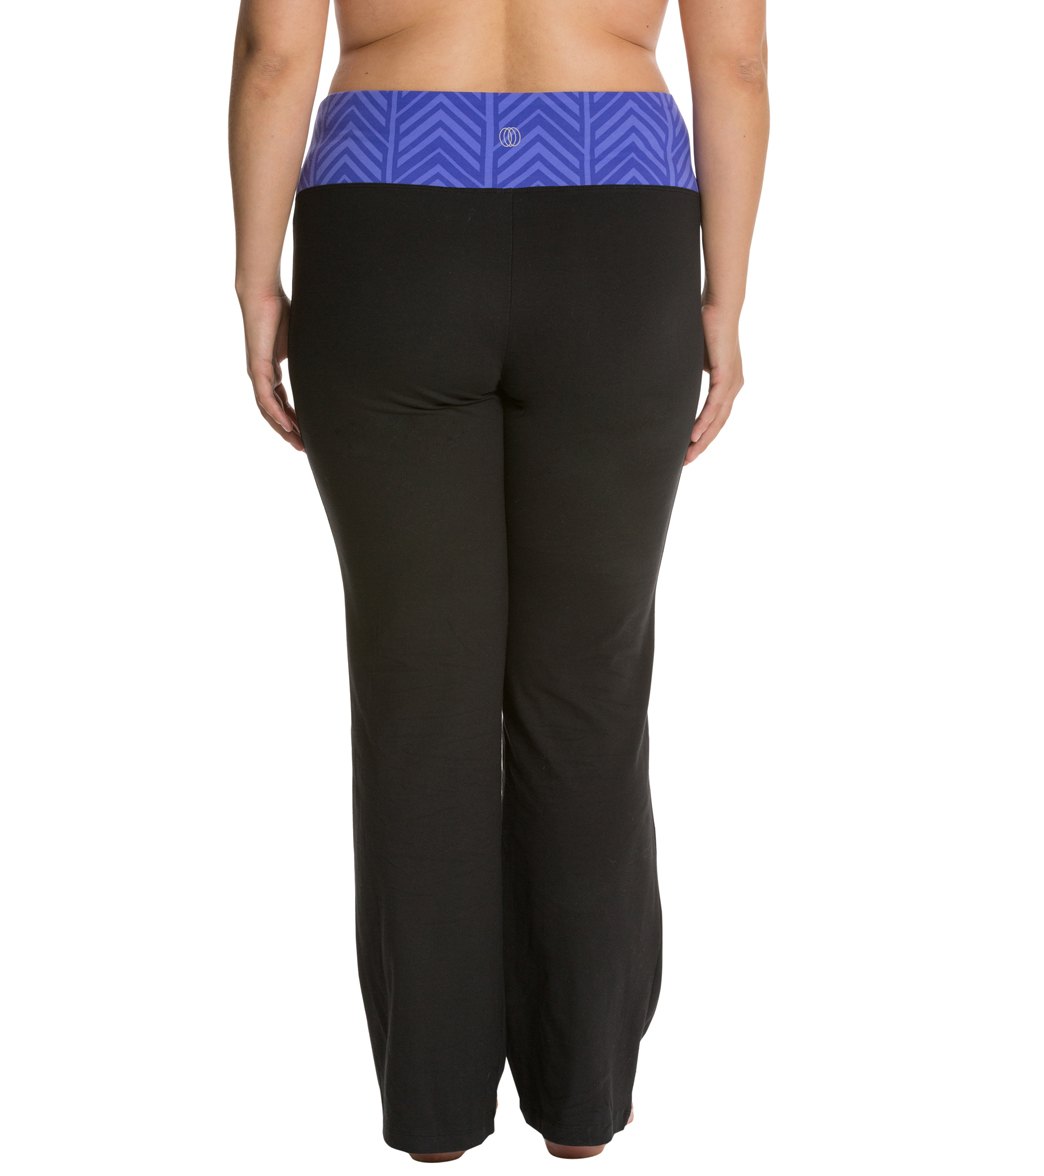 Marika Balance Collection Flat Waist Yoga Pants at